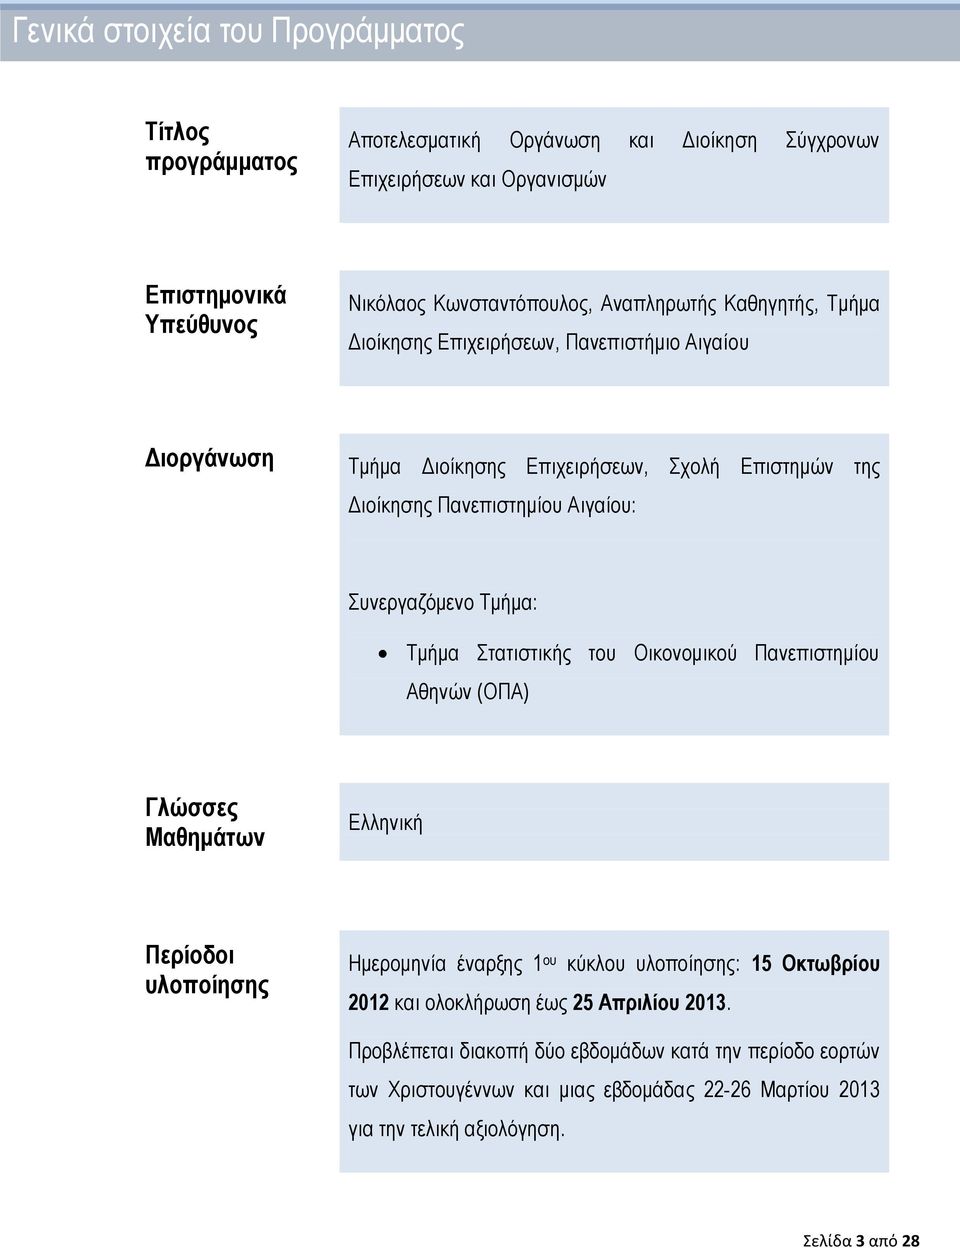 Τμήμα: Τμήμα Στατιστικής του Οικονομικού Πανεπιστημίου Αθηνών (ΟΠΑ) Γλώσσες Μαθημάτων Ελληνική Περίοδοι υλοποίησης Ημερομηνία έναρξης 1 ου κύκλου υλοποίησης: 15 Οκτωβρίου 2012 και